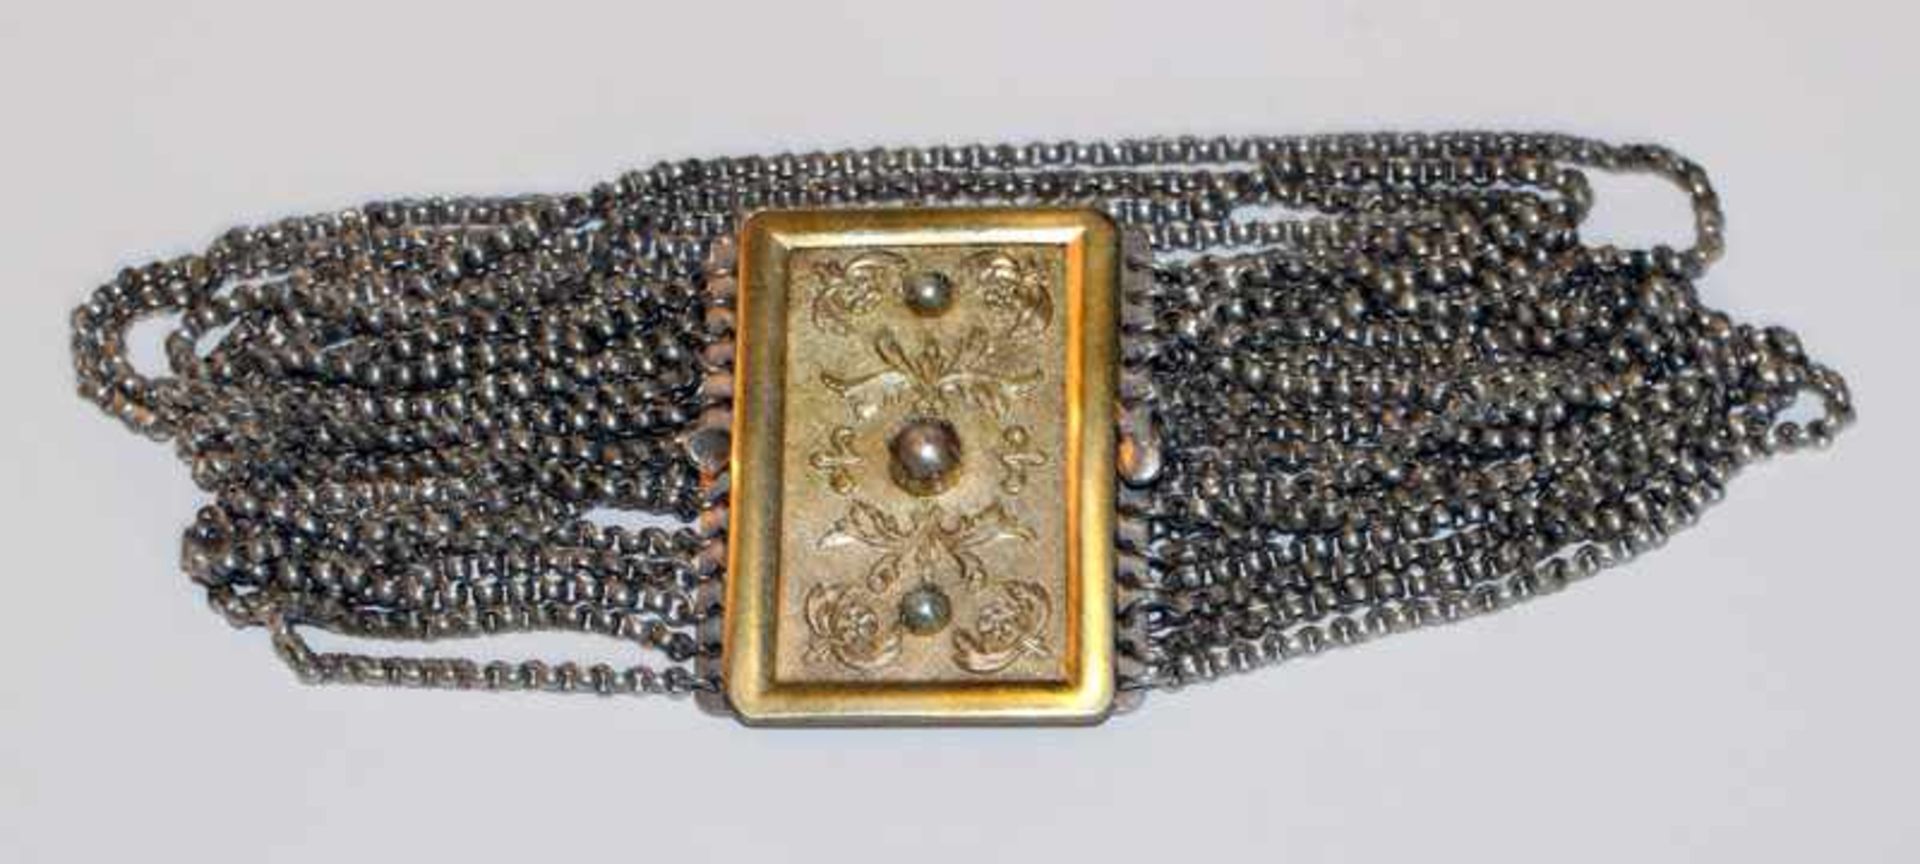 Silber Kropfkette, 12-reihig mit vergoldeter Schließe, Reliefdekor unt 3 Perlen, L 33 cm, 140 gr.